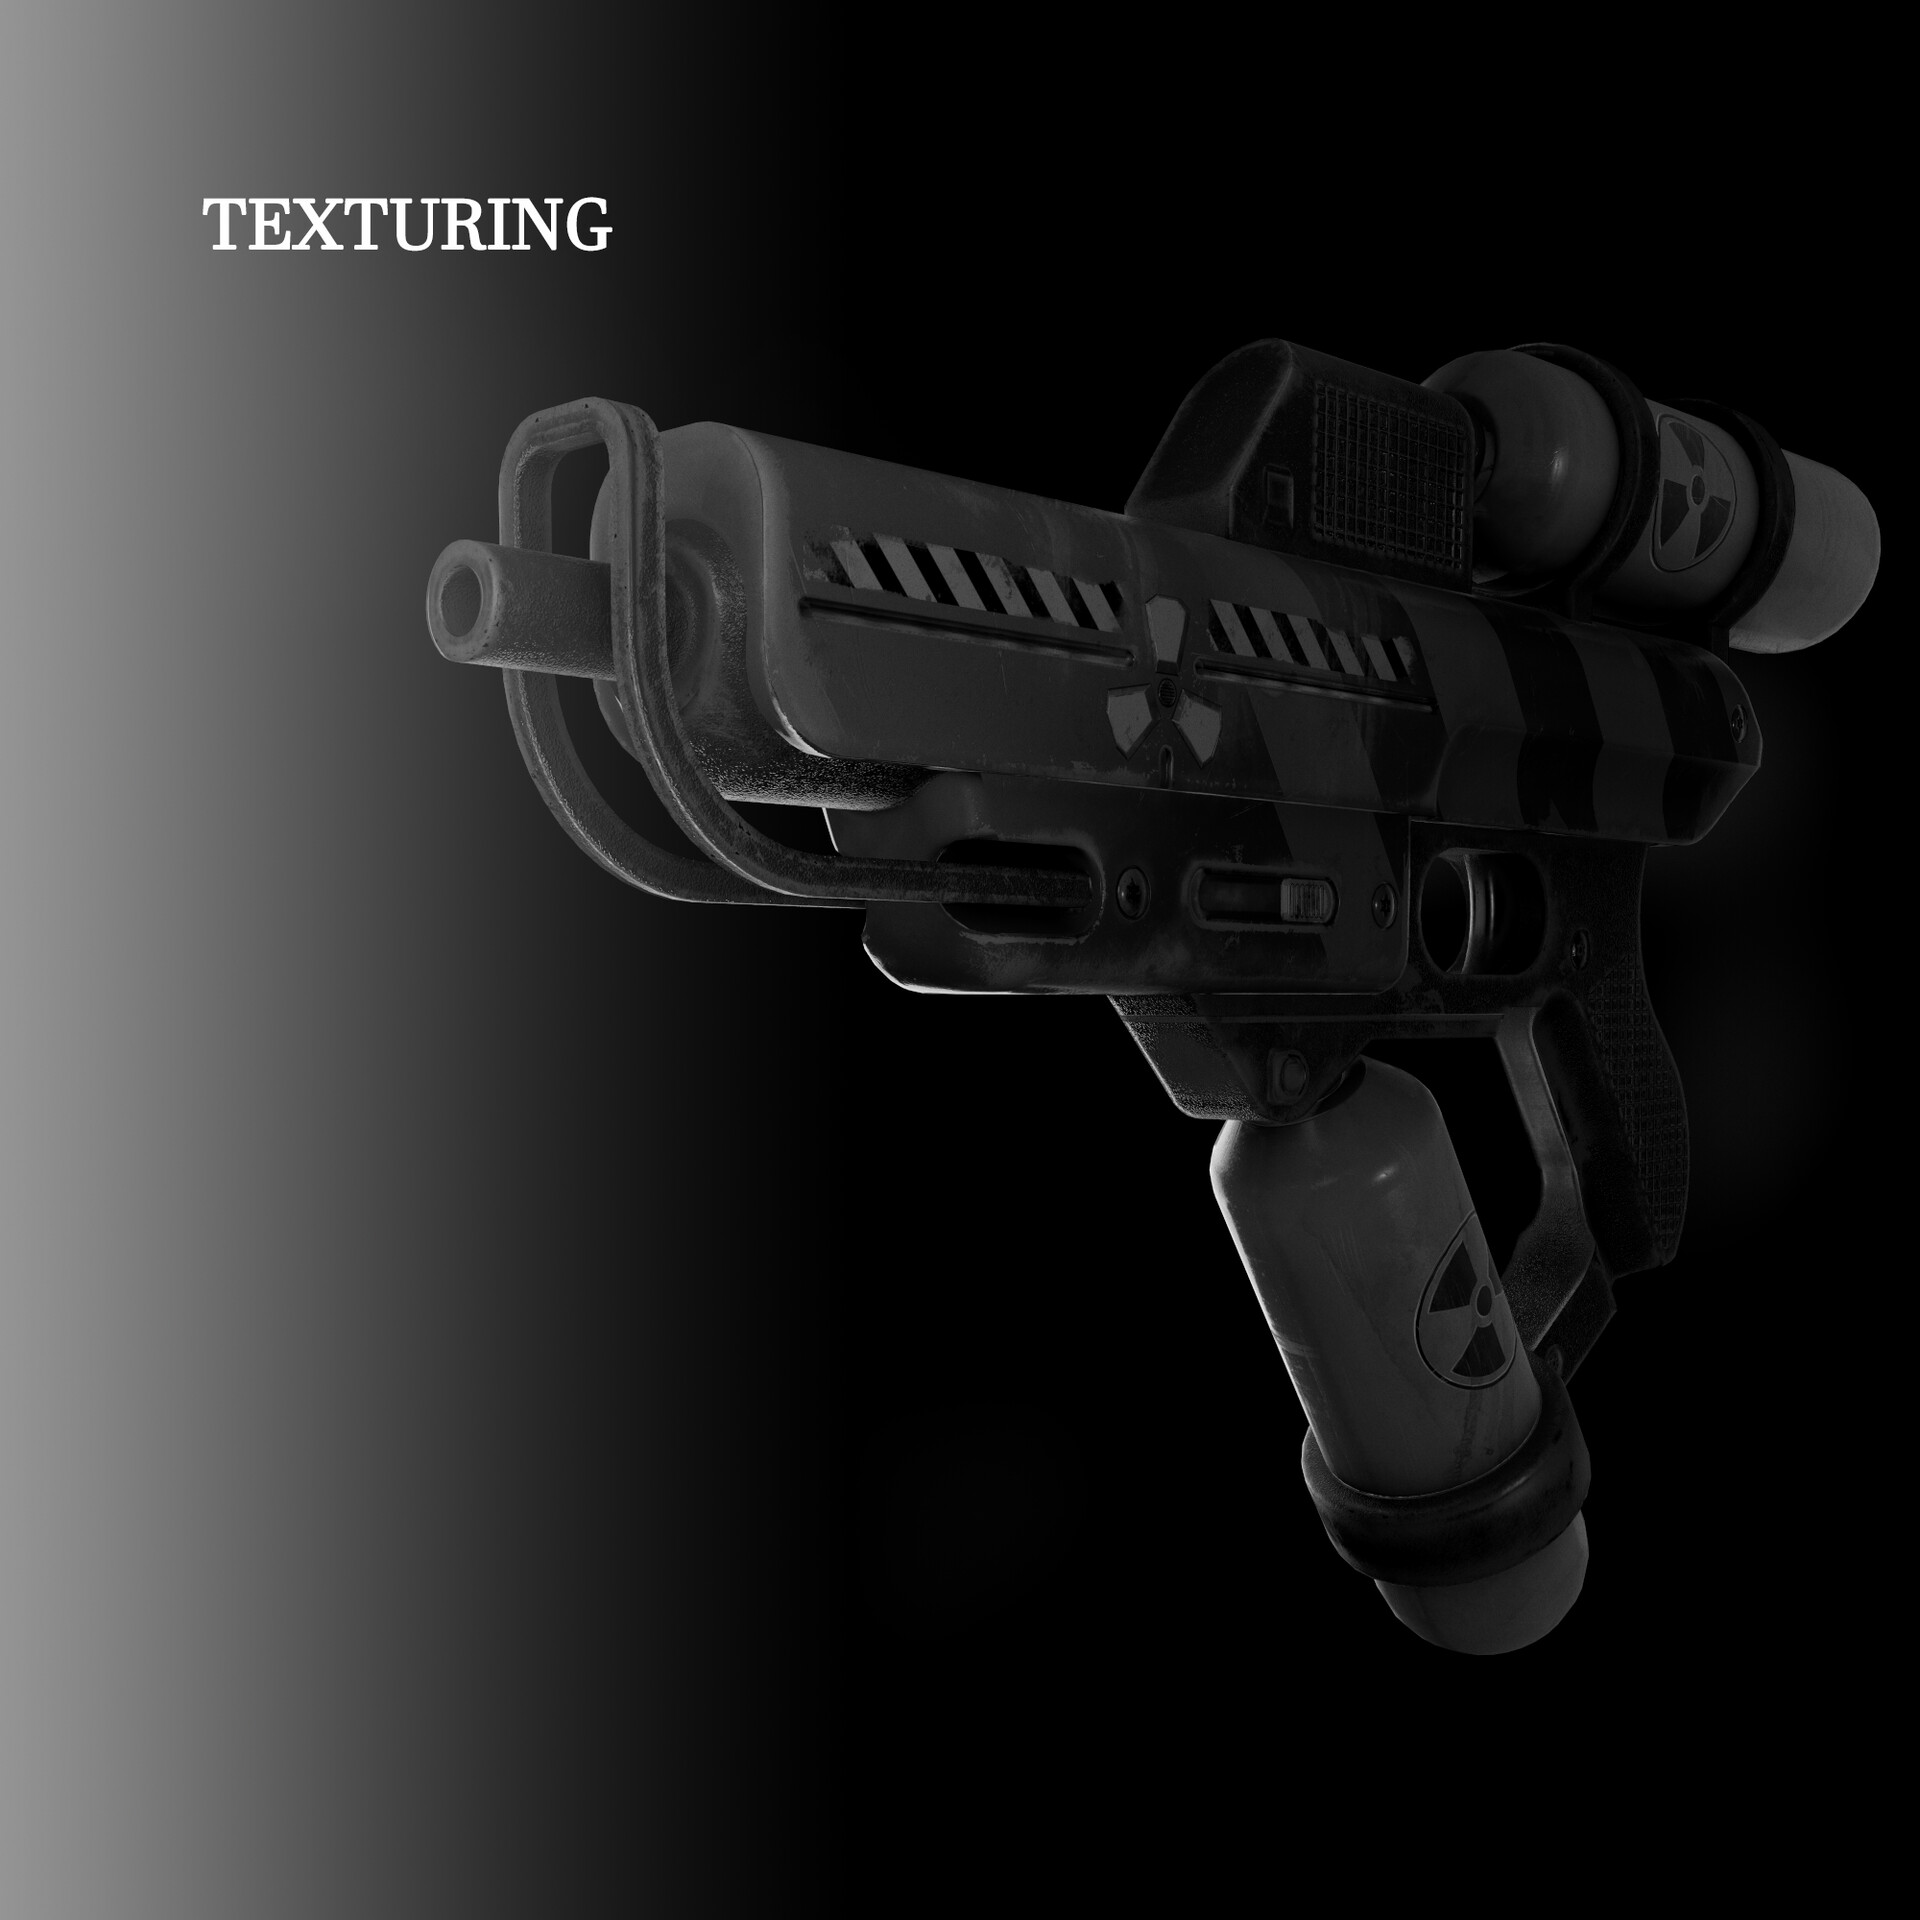 ArtStation - Texturing - radioactive pistol